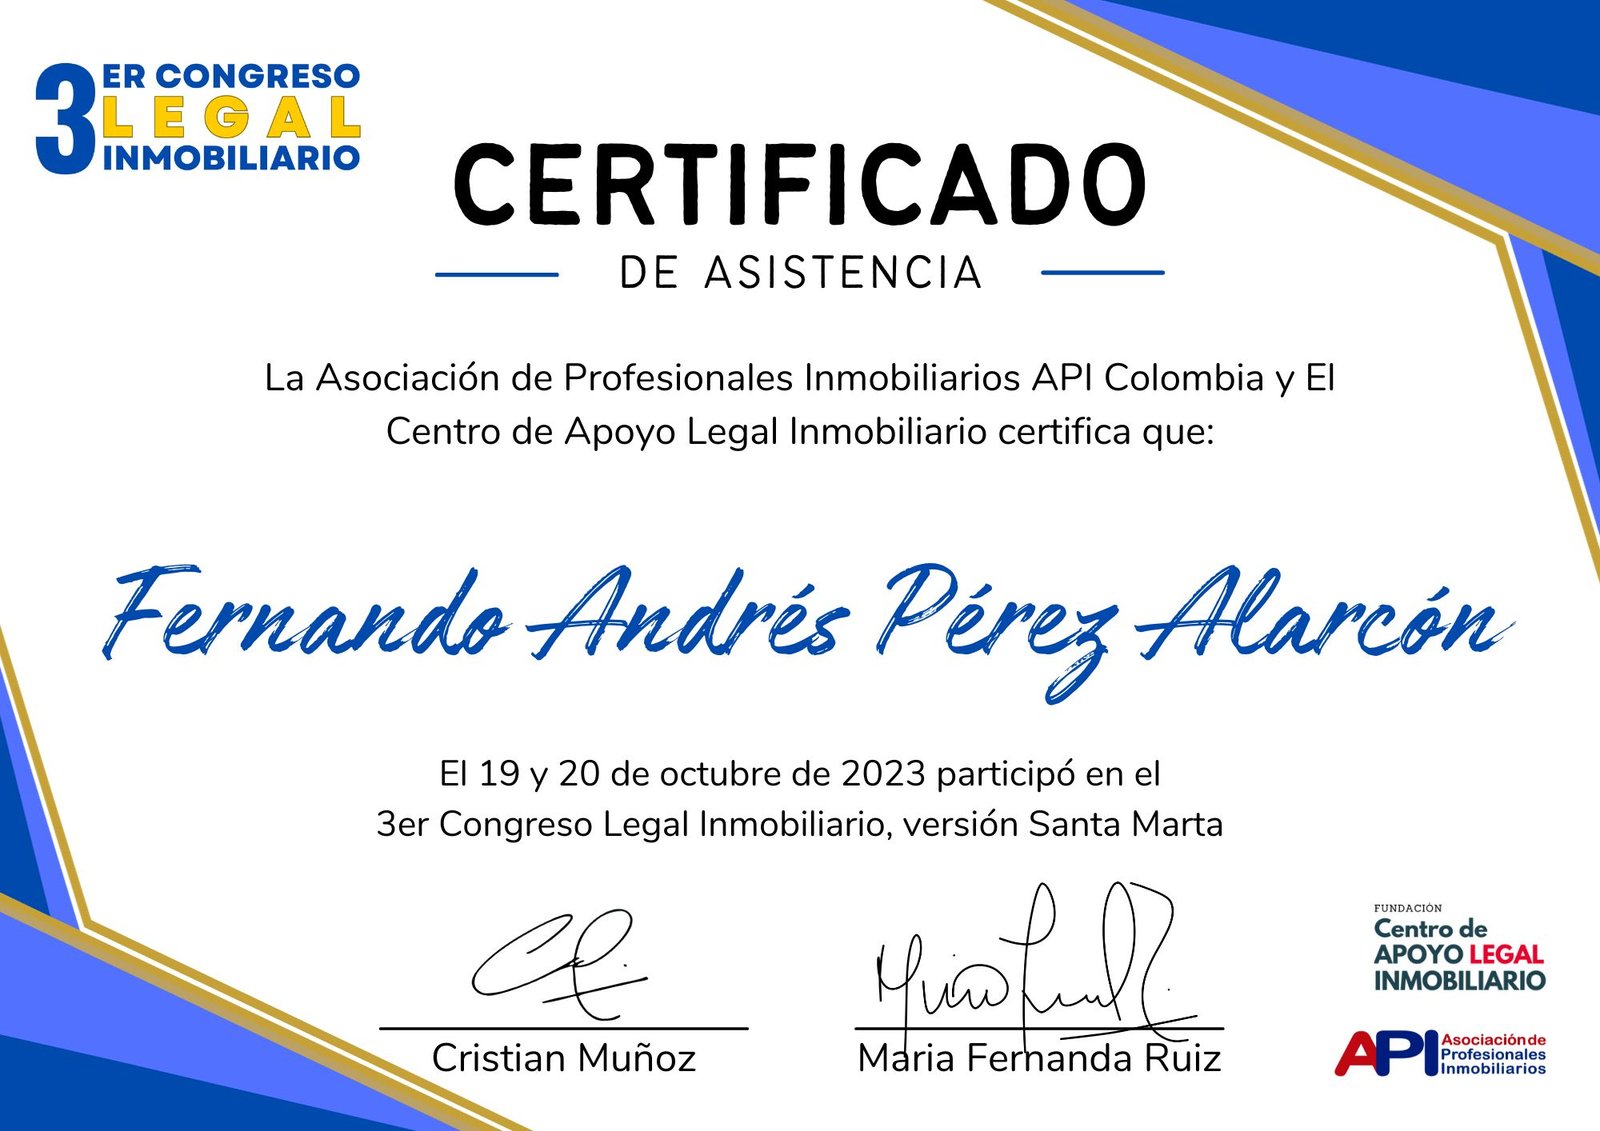 Certificado de Asistencia - 3er Congreso Legal Inmobiliario - Fernando Andrés Pérez Alarcón - Consulta Mis Inmuebles S.A.S. | Tu nuevo comienzo empieza hoy!